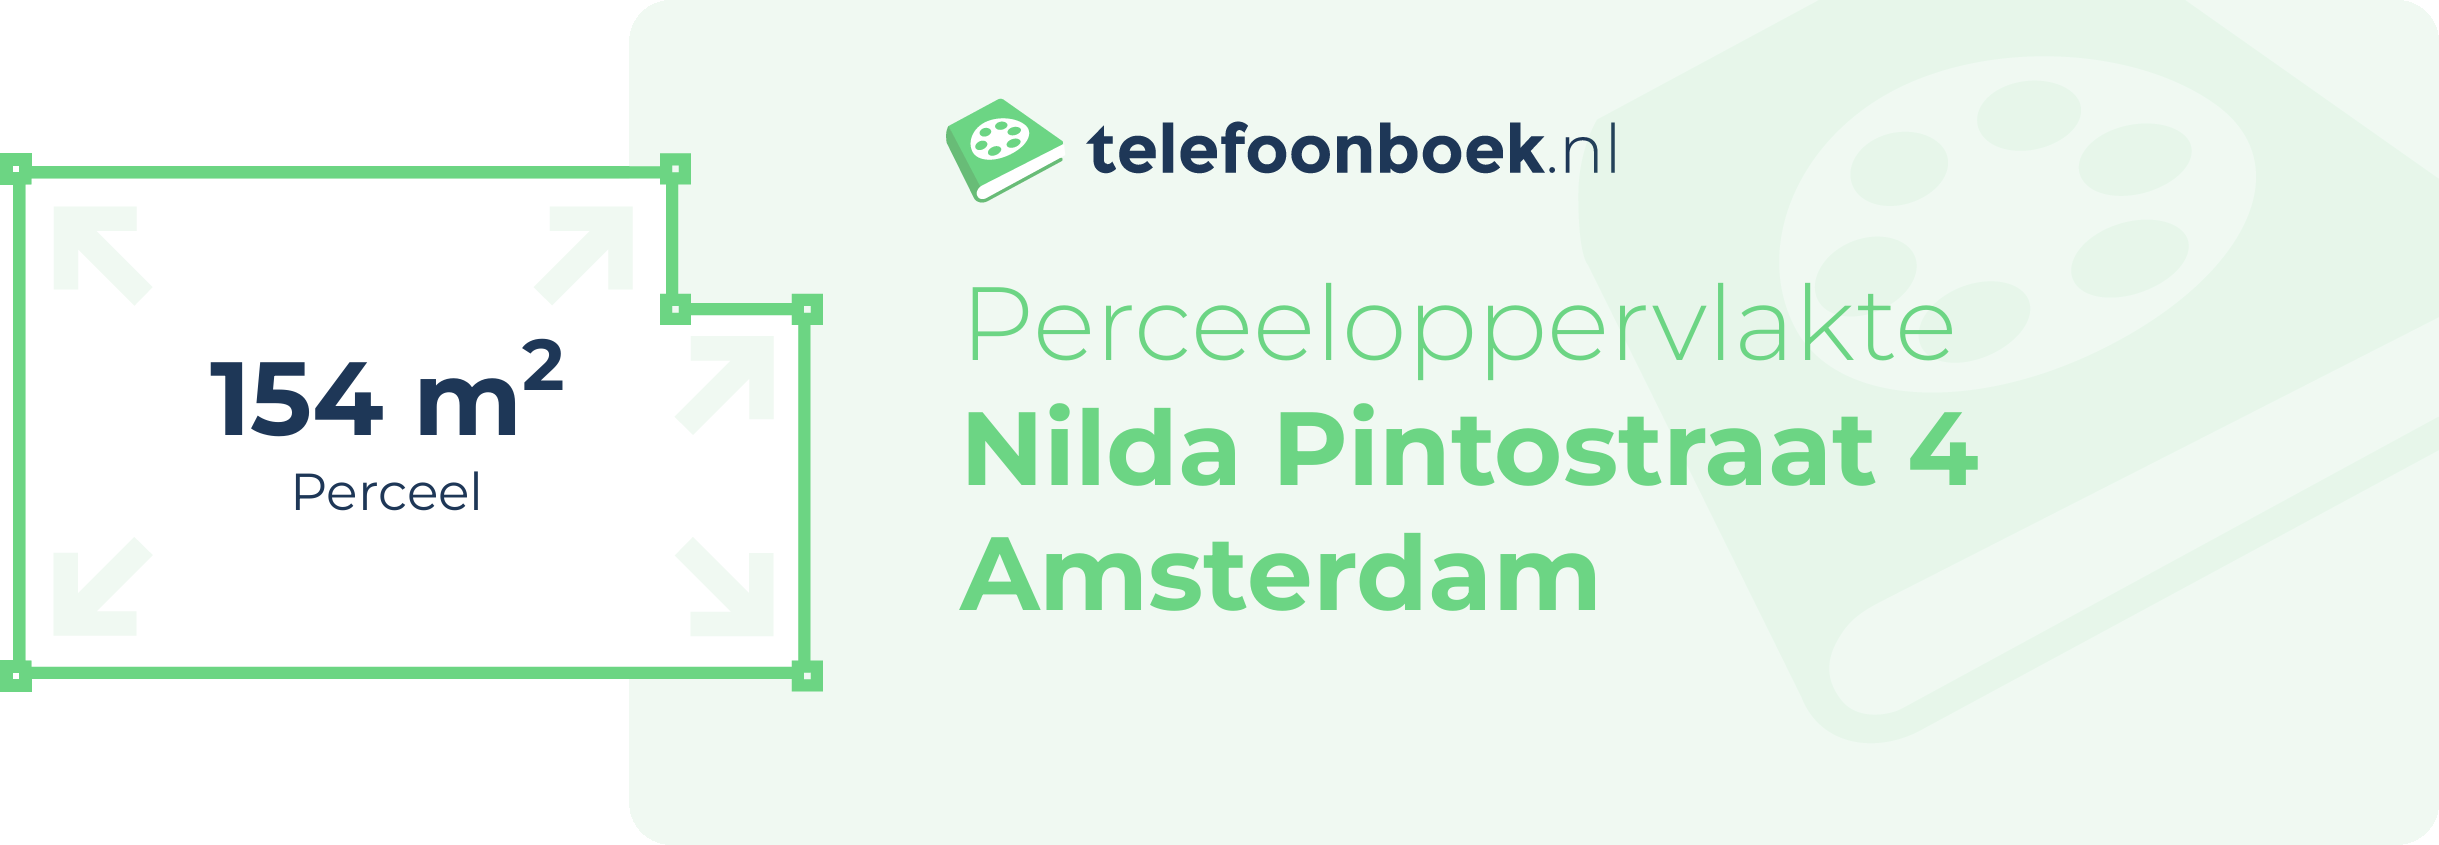 Perceeloppervlakte Nilda Pintostraat 4 Amsterdam